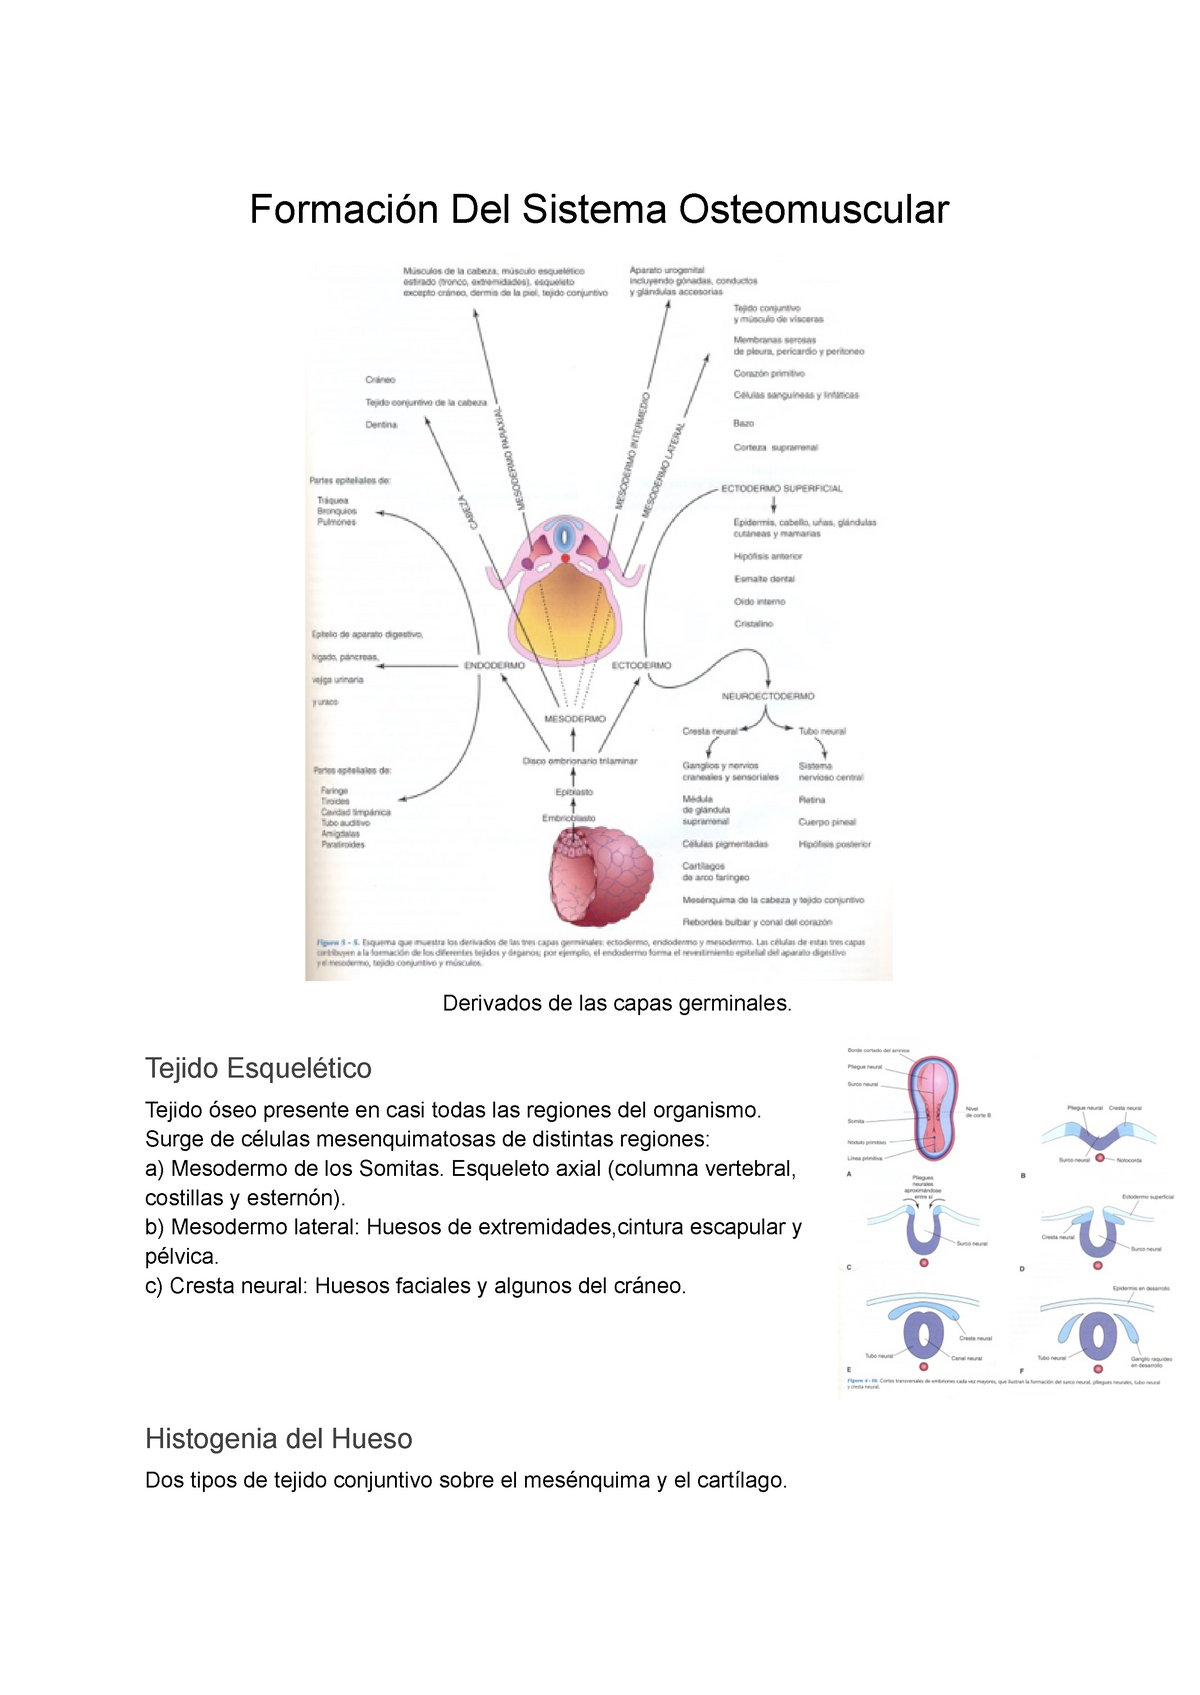 Desarrollo Del Sistema Osteomuscular Y Extremidades Formación Del Sistema Osteomuscular 3969